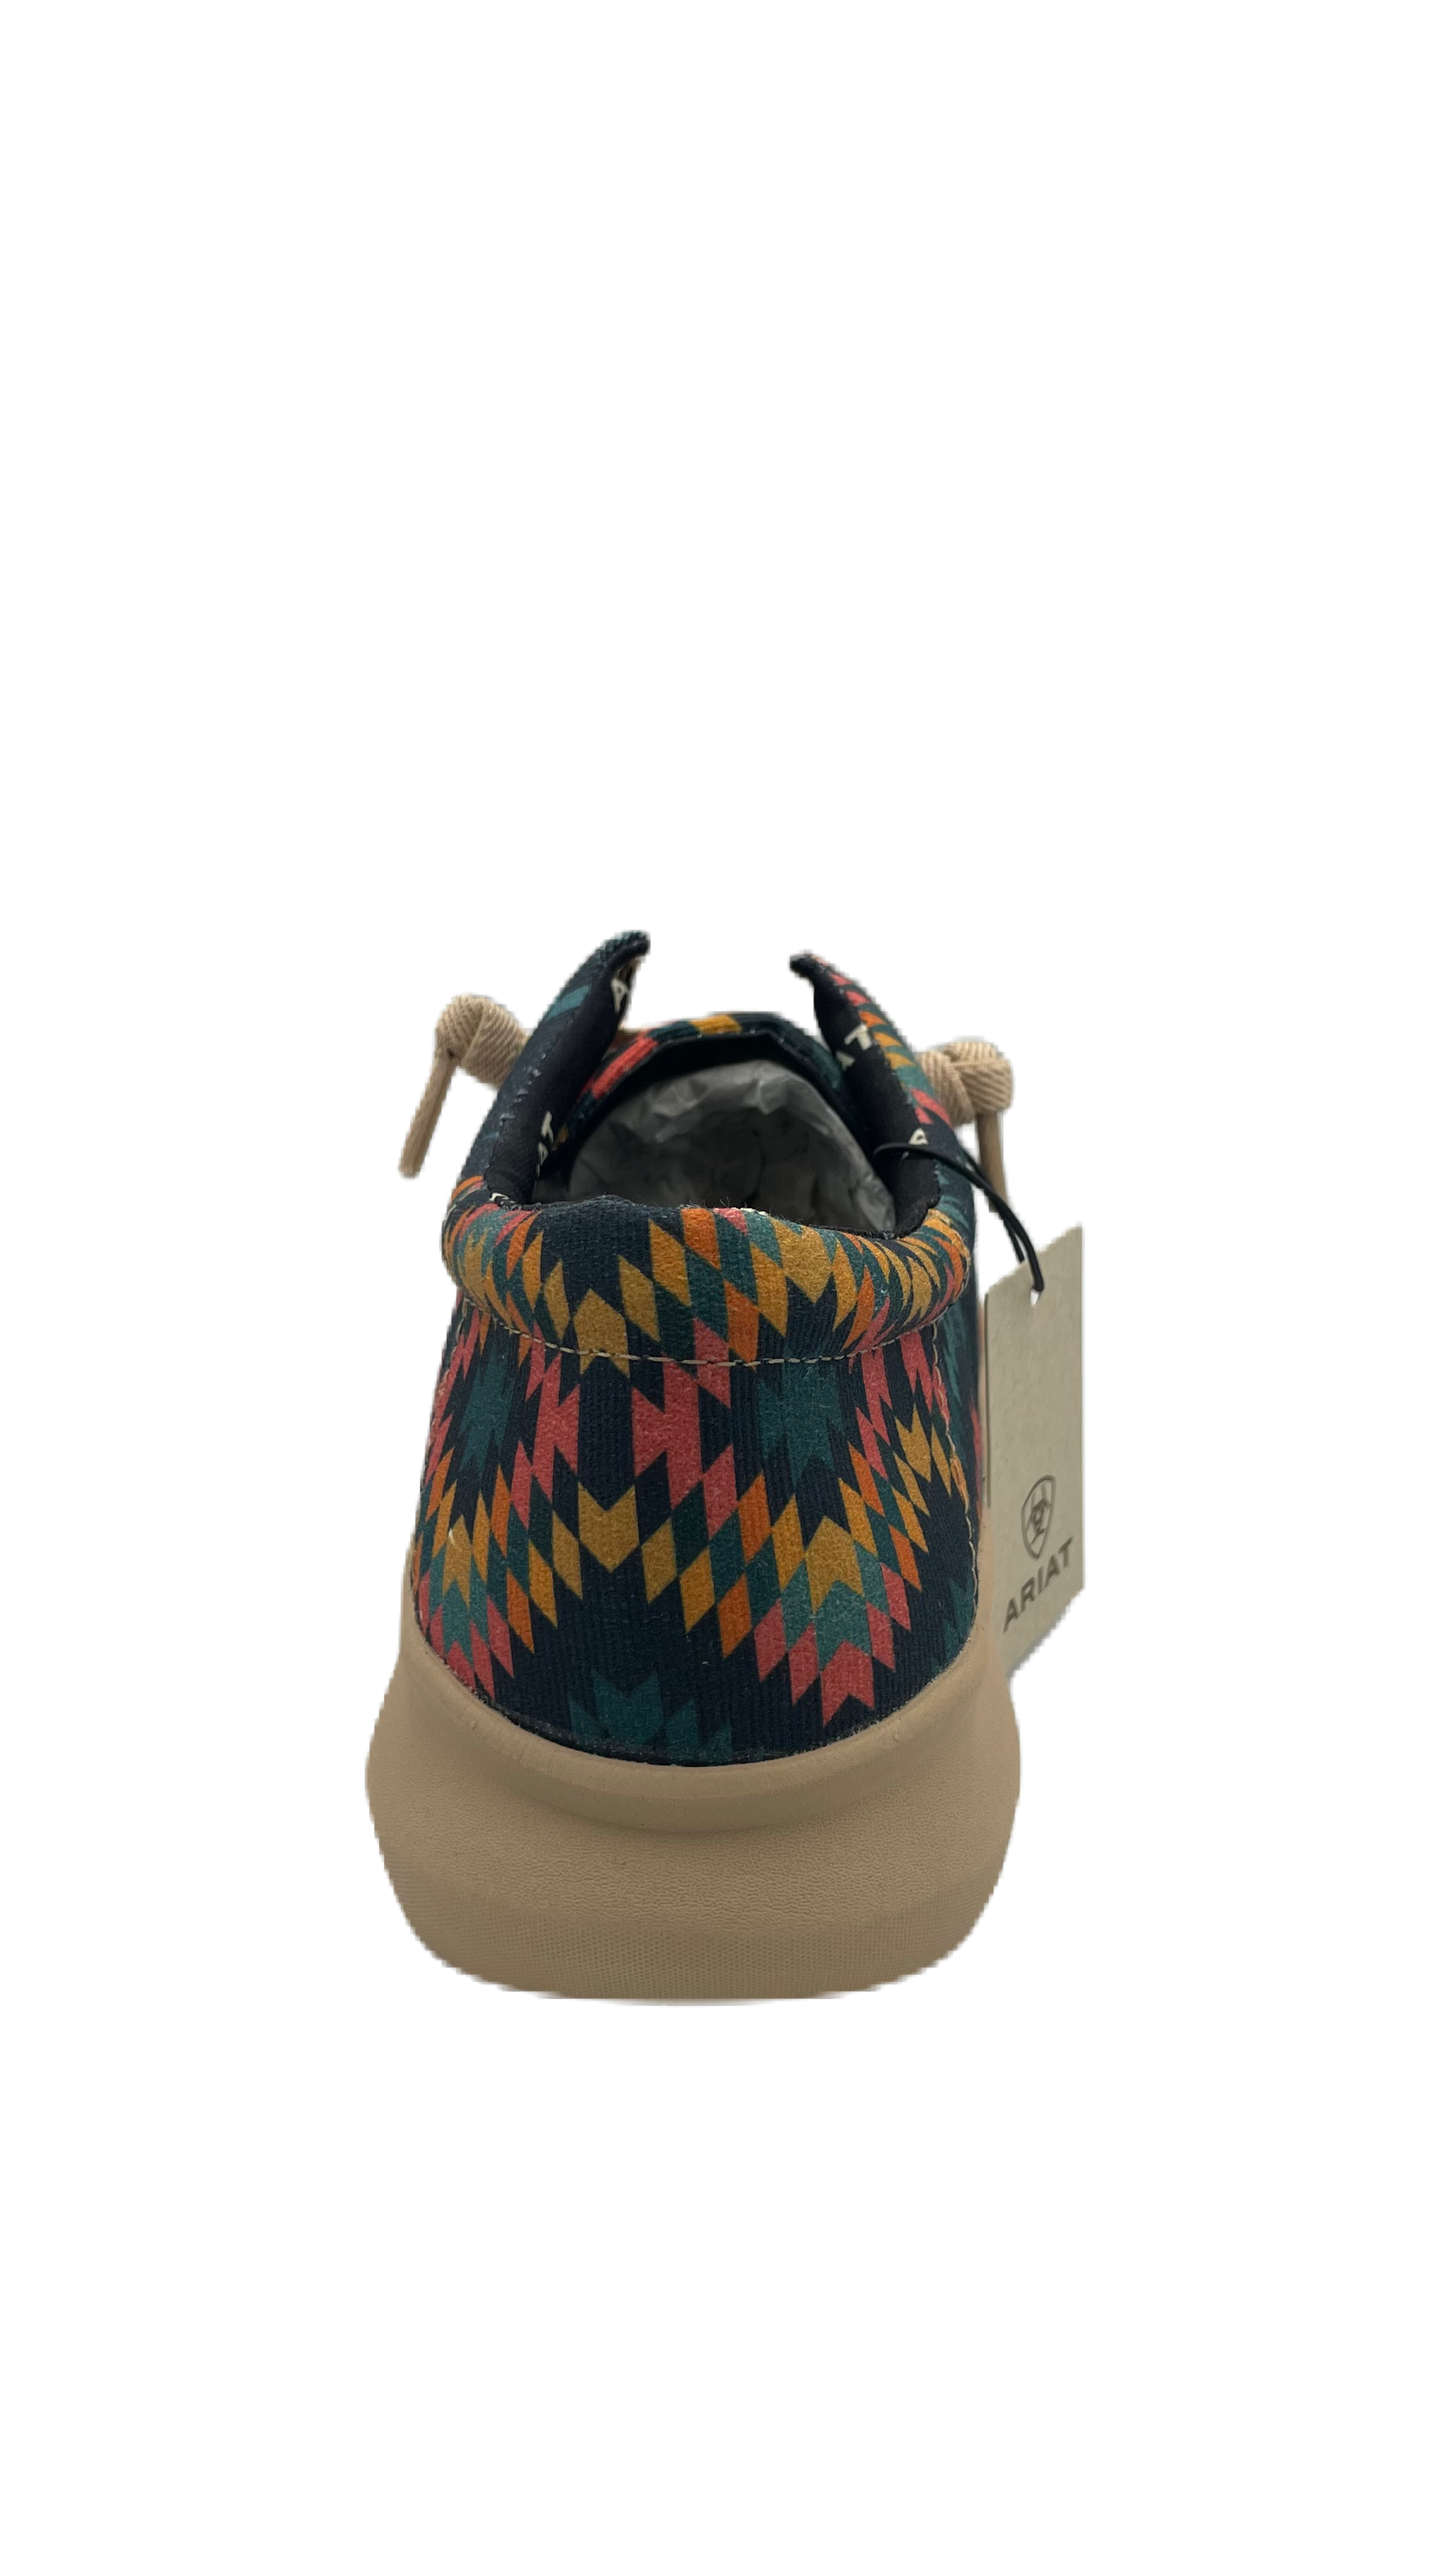 Zapato Ariat chimayo caballero con diseño azteca en colores